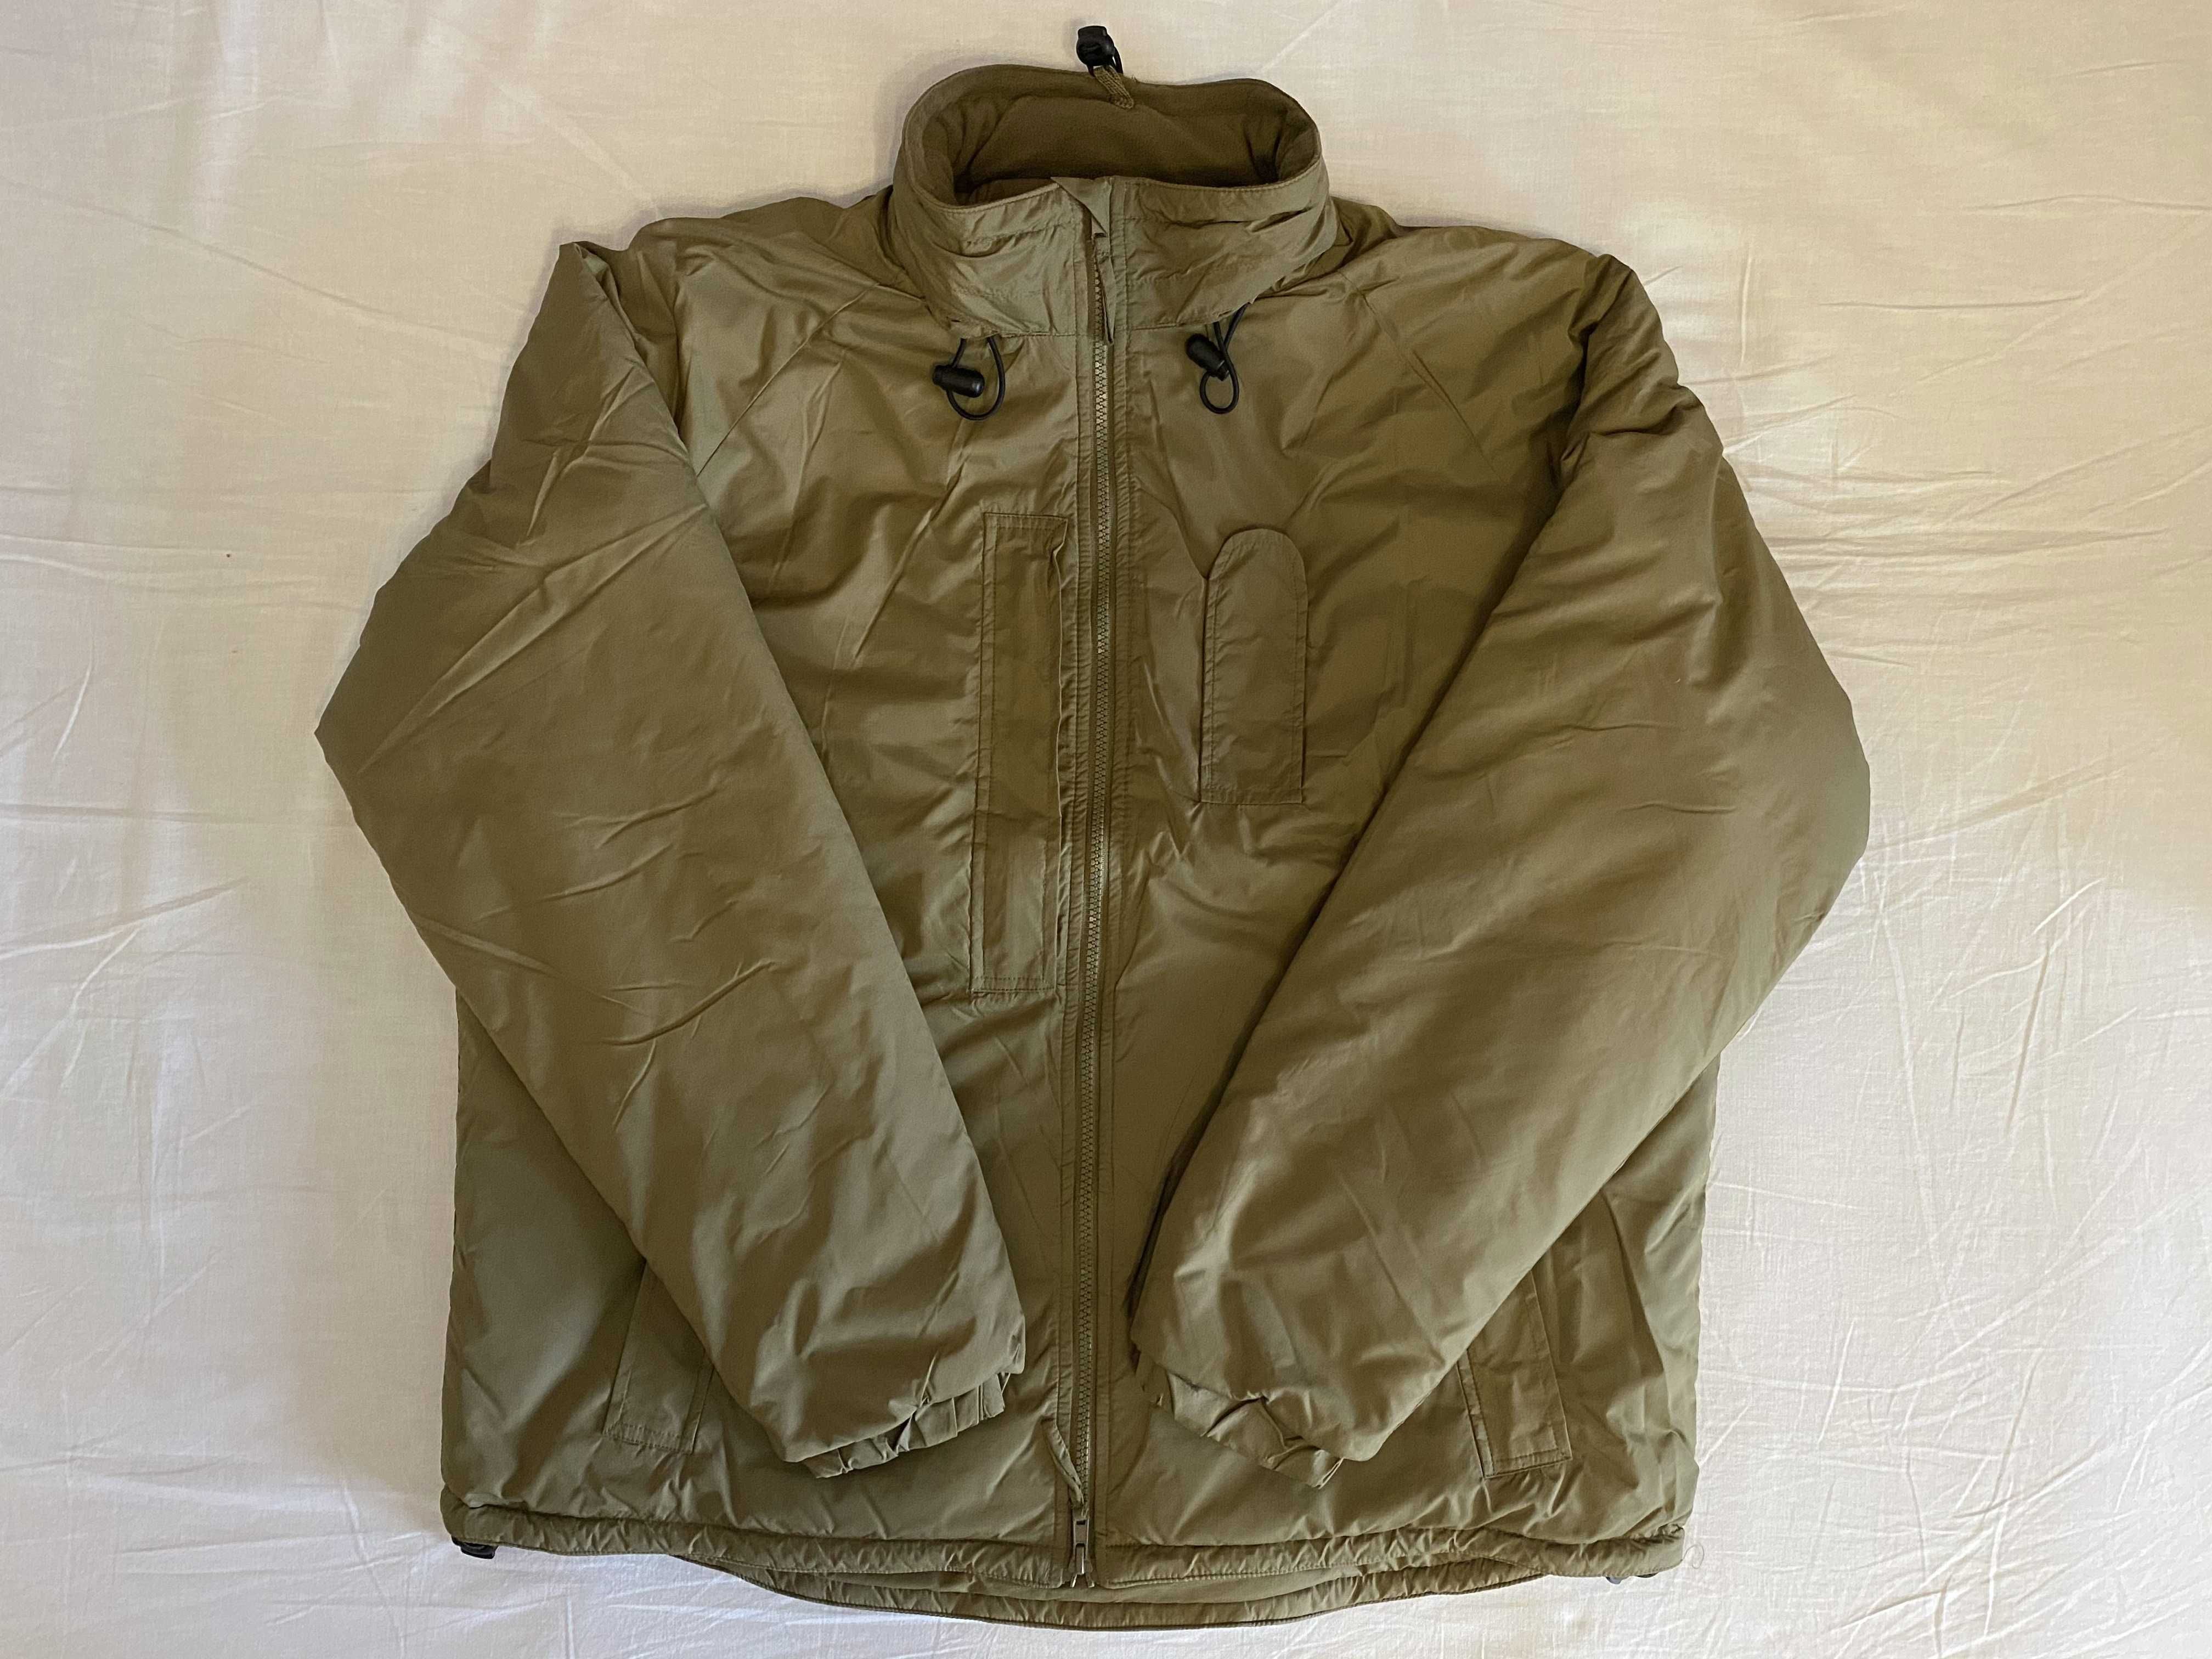 Качество выше цены! Военная куртка мужская зимняя PCS Thermal Jacket